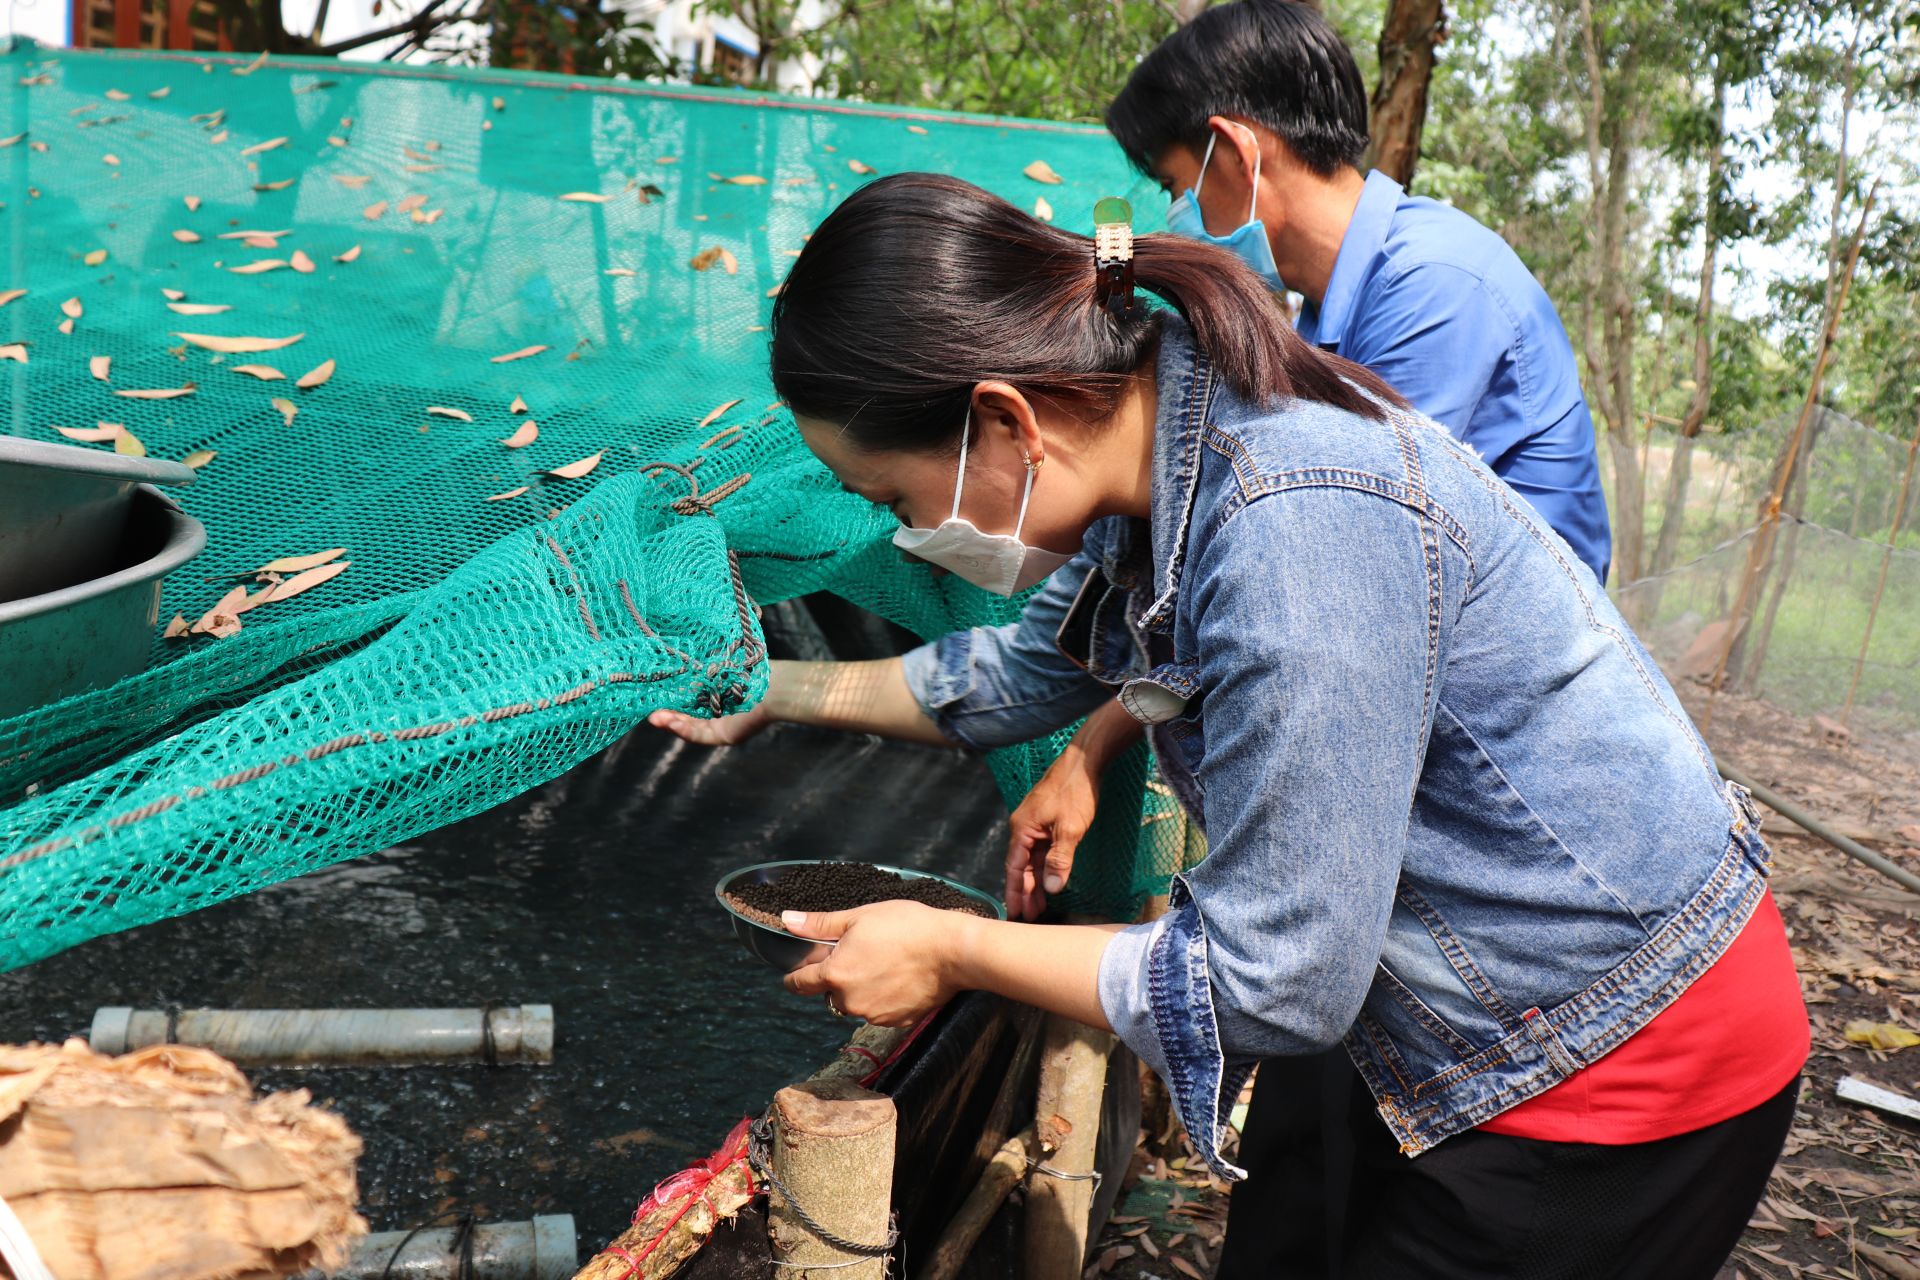 Tây Ninh: Làm bể xi măng lót bạt nuôi loài cá này dày đặc, tỷ lệ hao hụt thấp, nông dân lãi cao hơn - Ảnh 1.